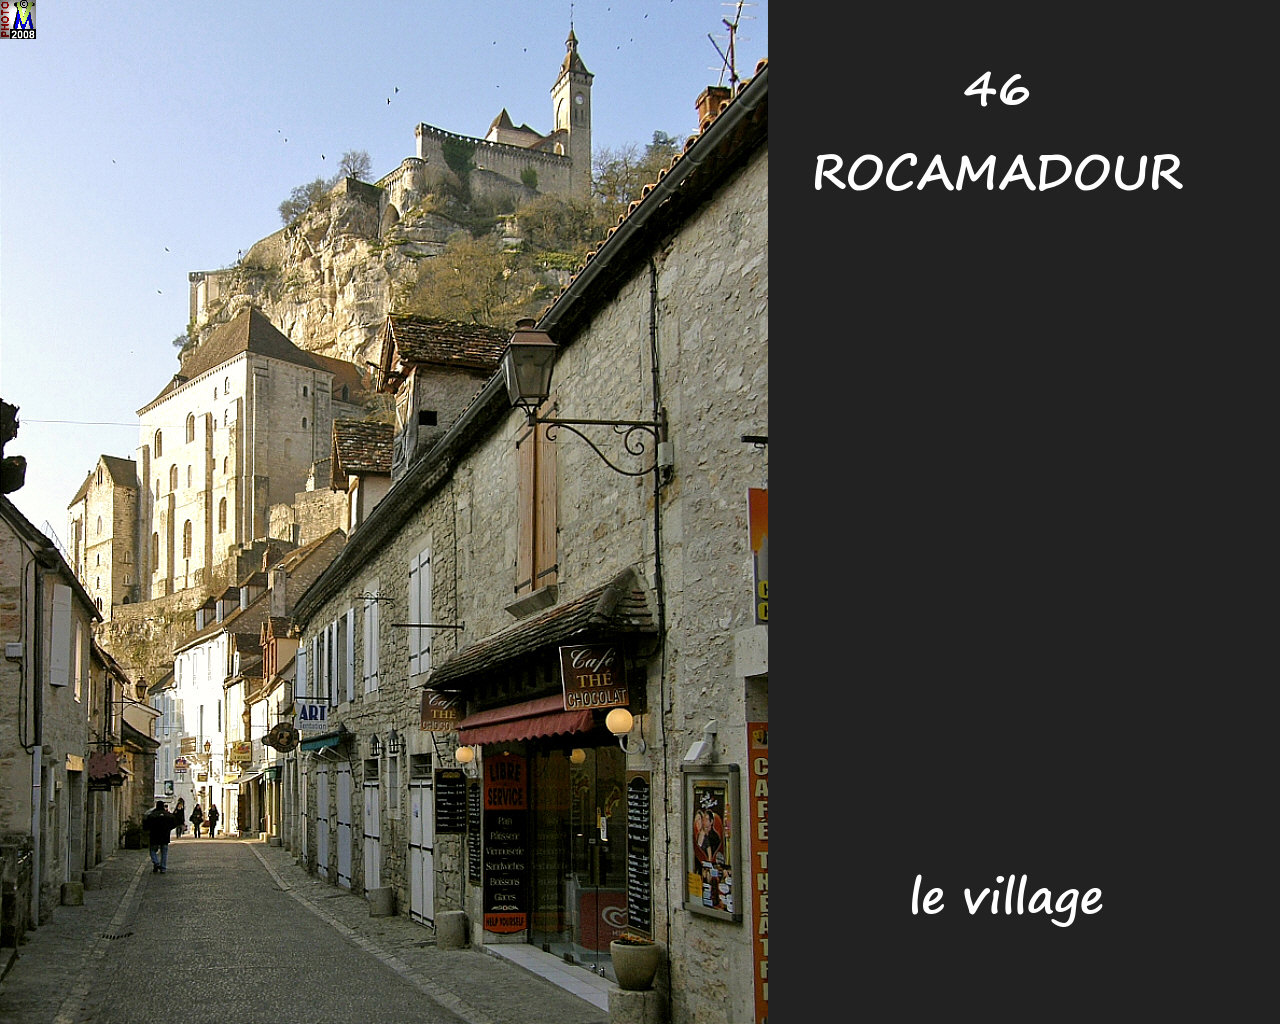 46ROCAMADOUR_village_106.jpg